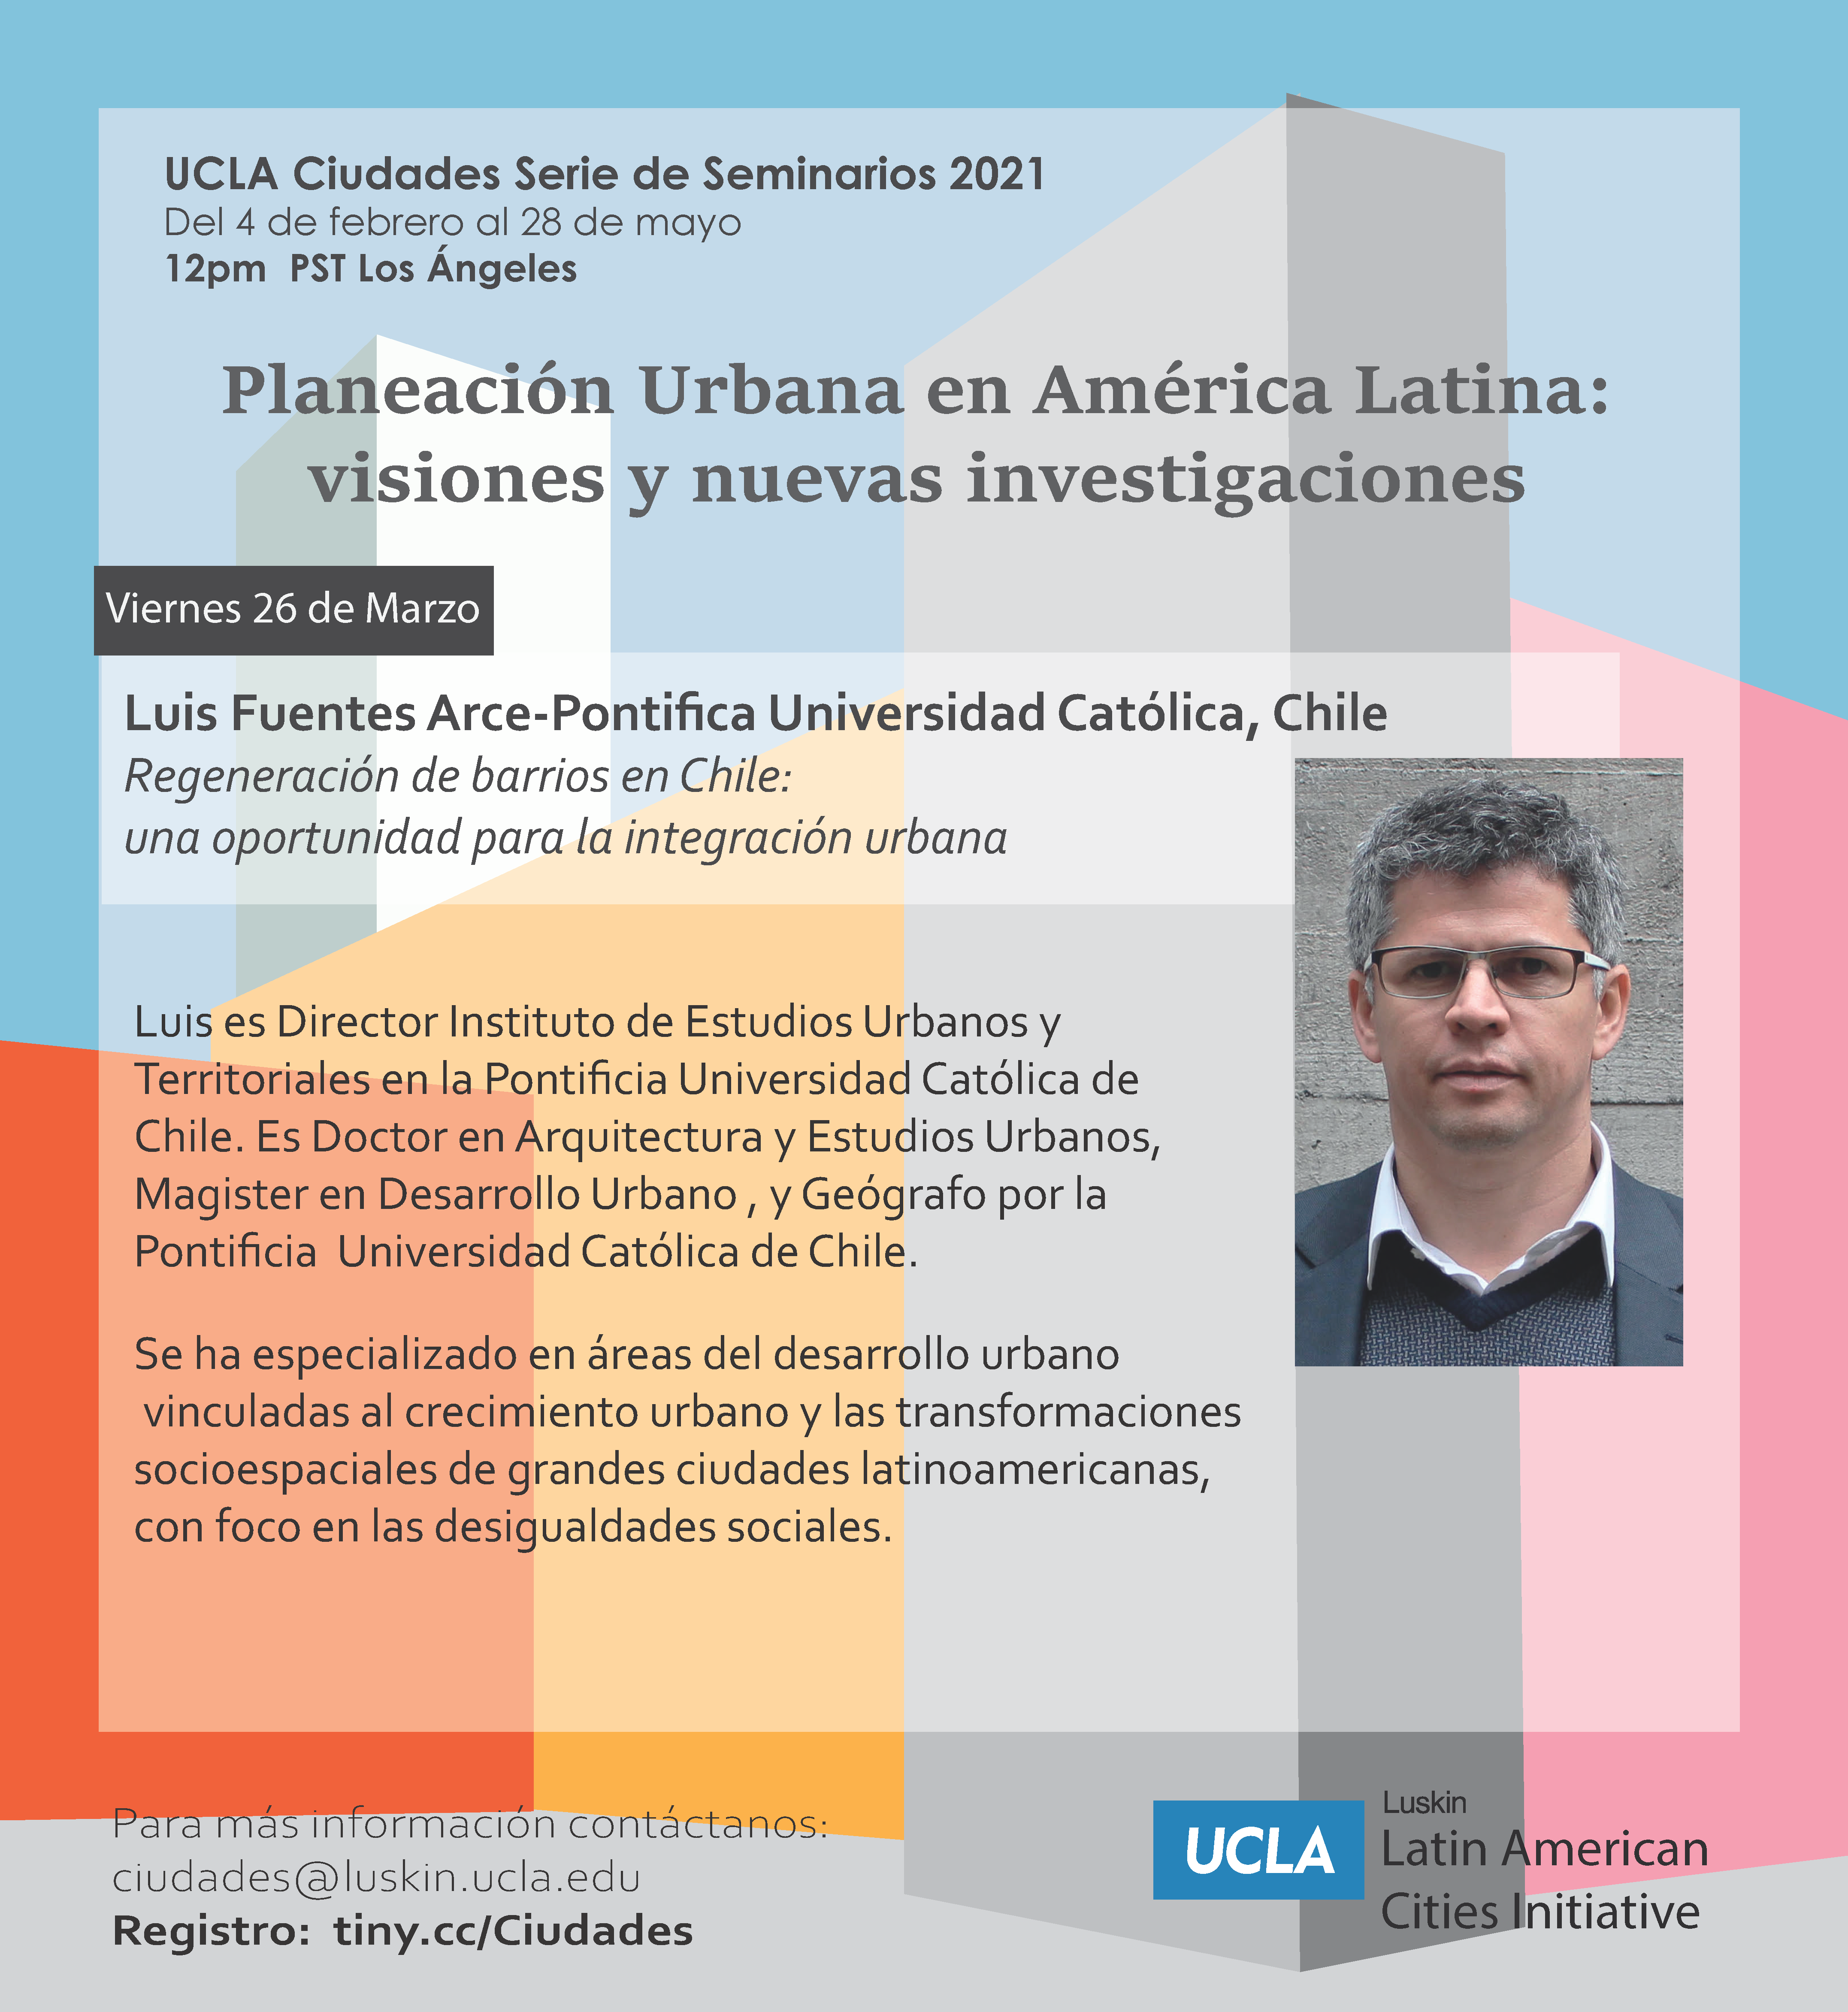 SEMINARIO | Planeación Urbana en América Latina: visiones y nuevas investigaciones “Regeneración de barrios en Chile” por Luis Fuentes